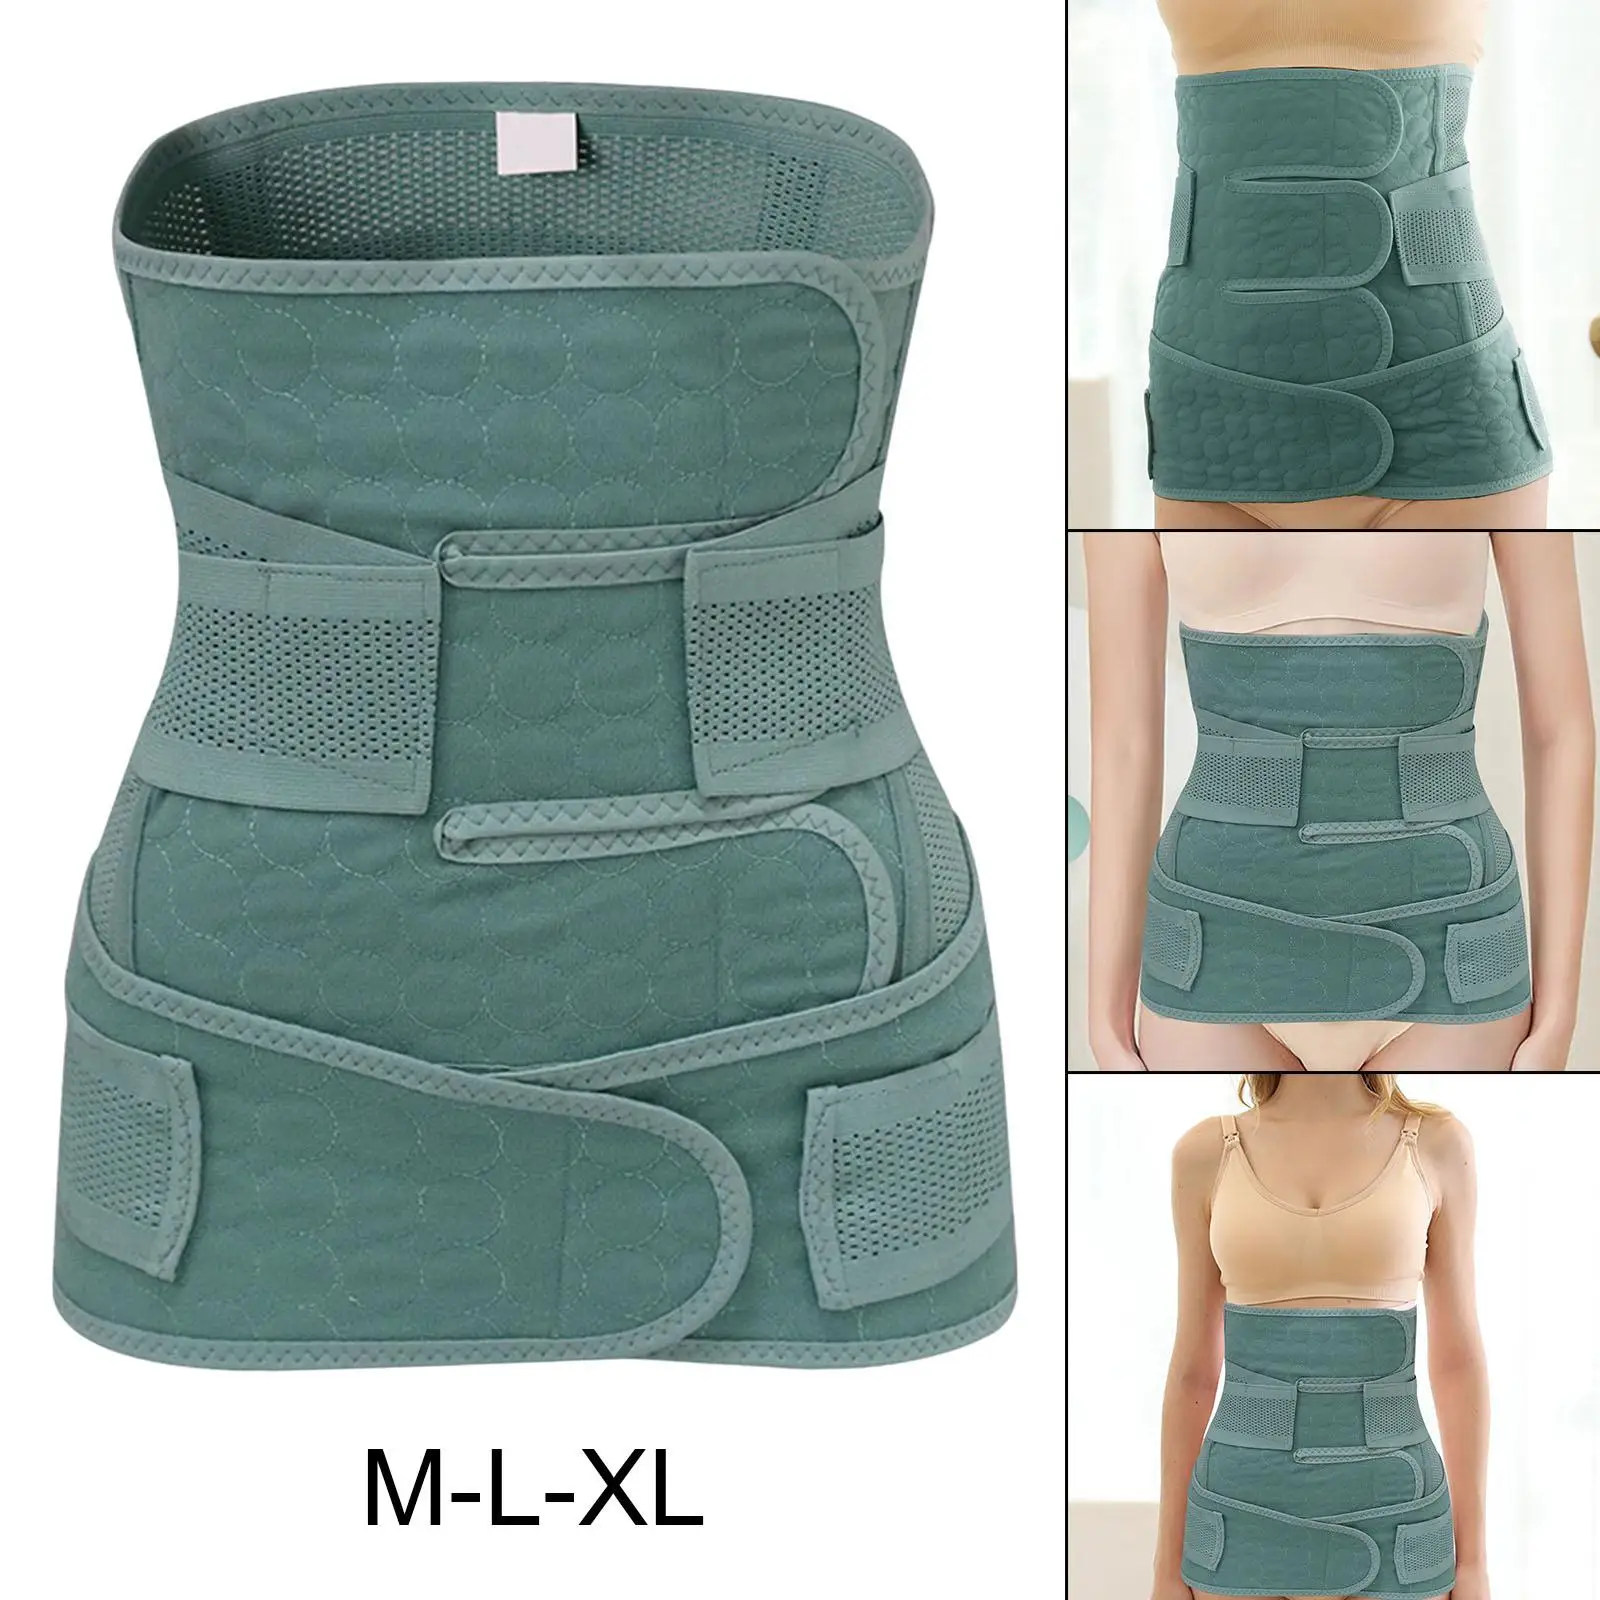 Postpartum Support Multifunctional Adjustable Waist Belt for Rest